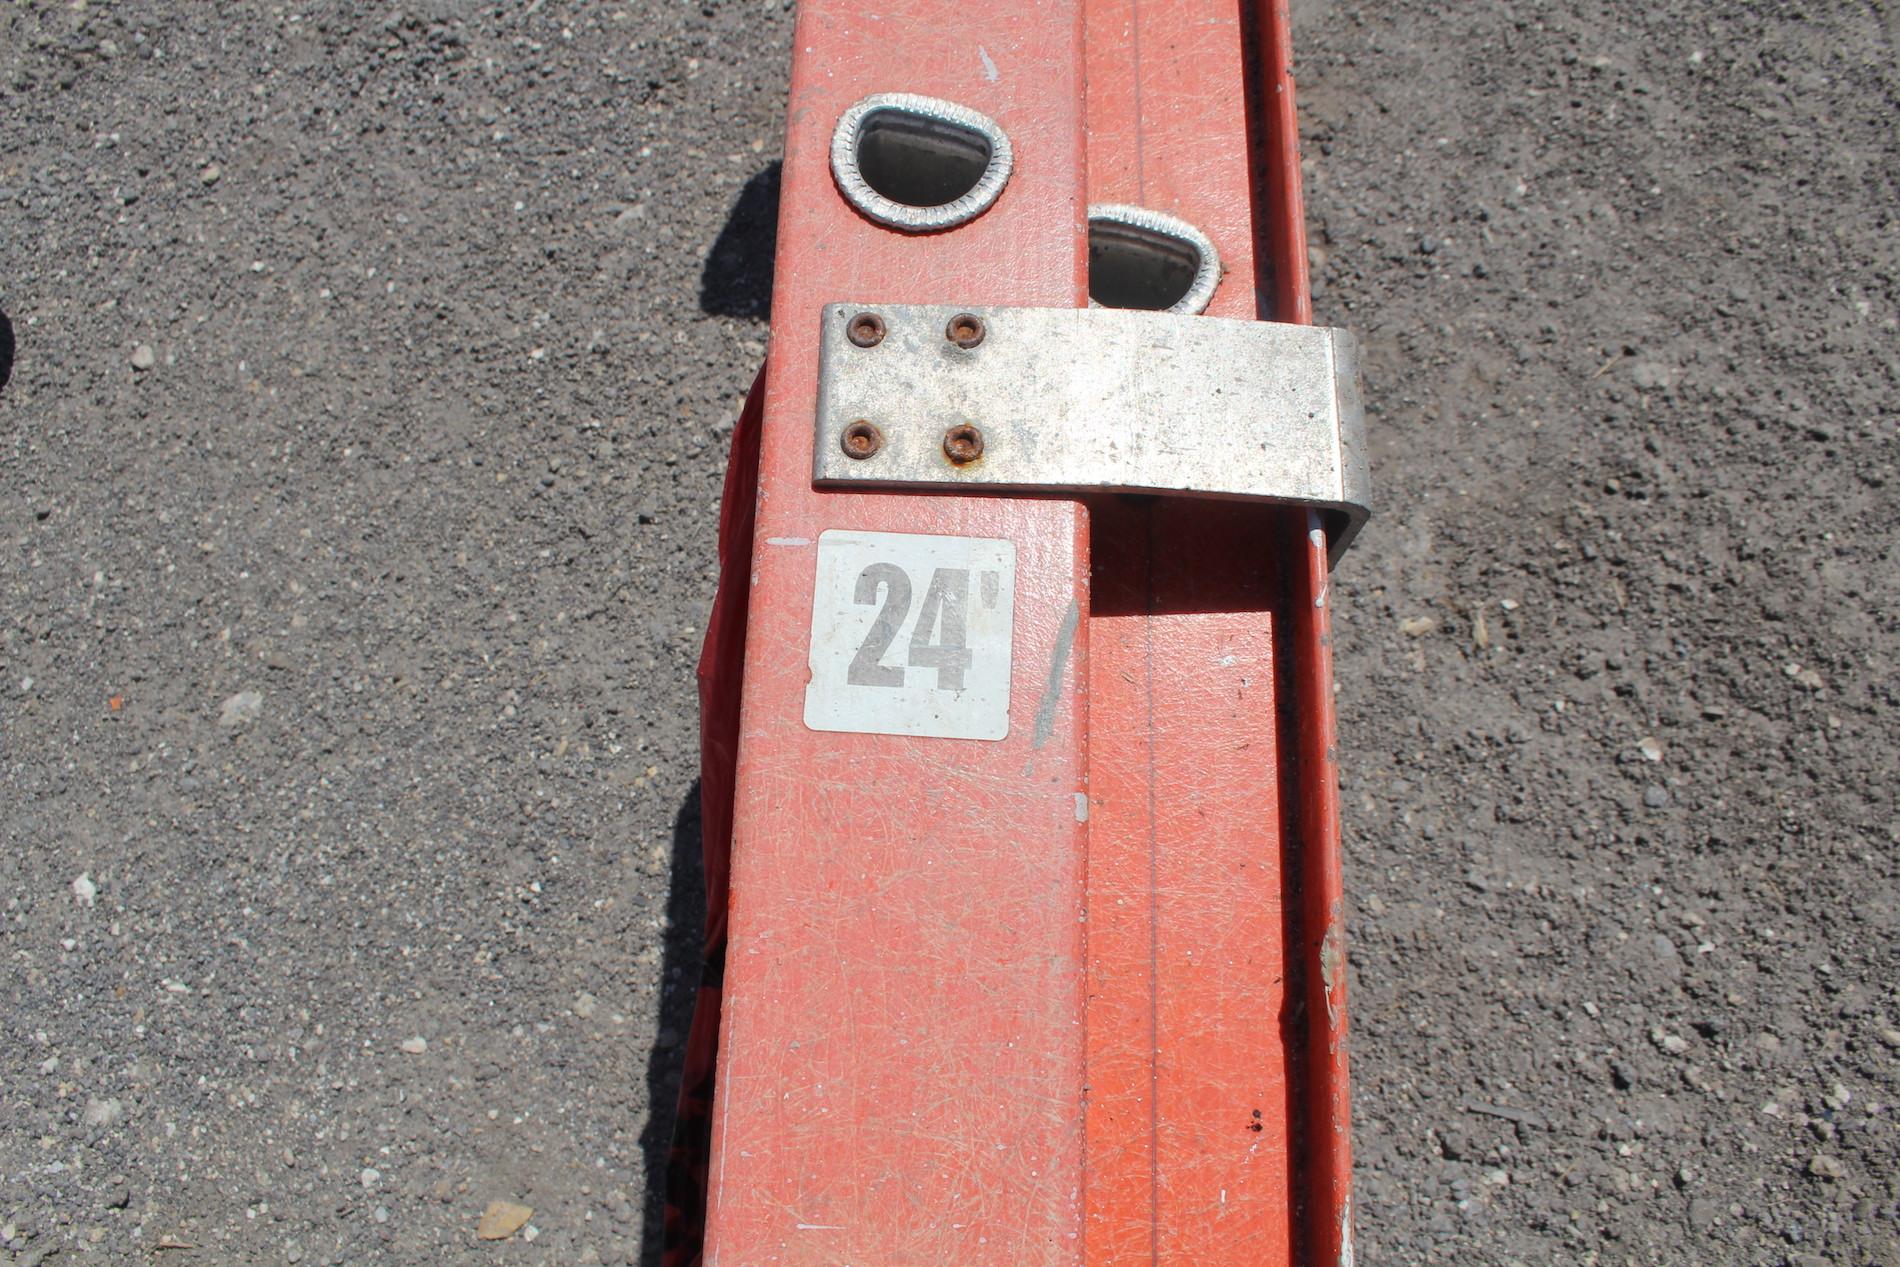 24ft Extension Ladder